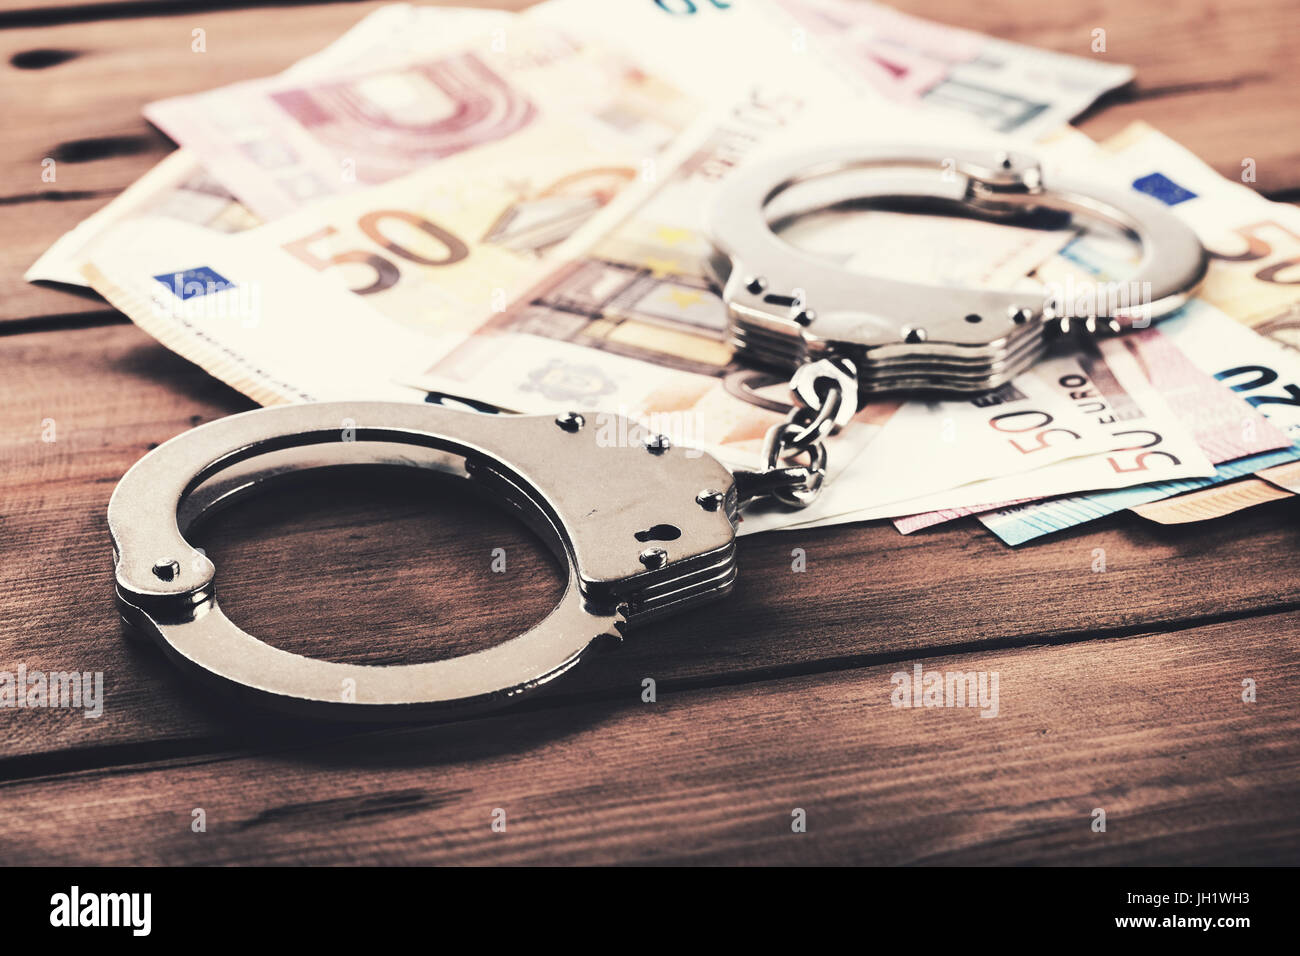 Criminalité financière - concept de l'argent et des menottes sur la table Banque D'Images